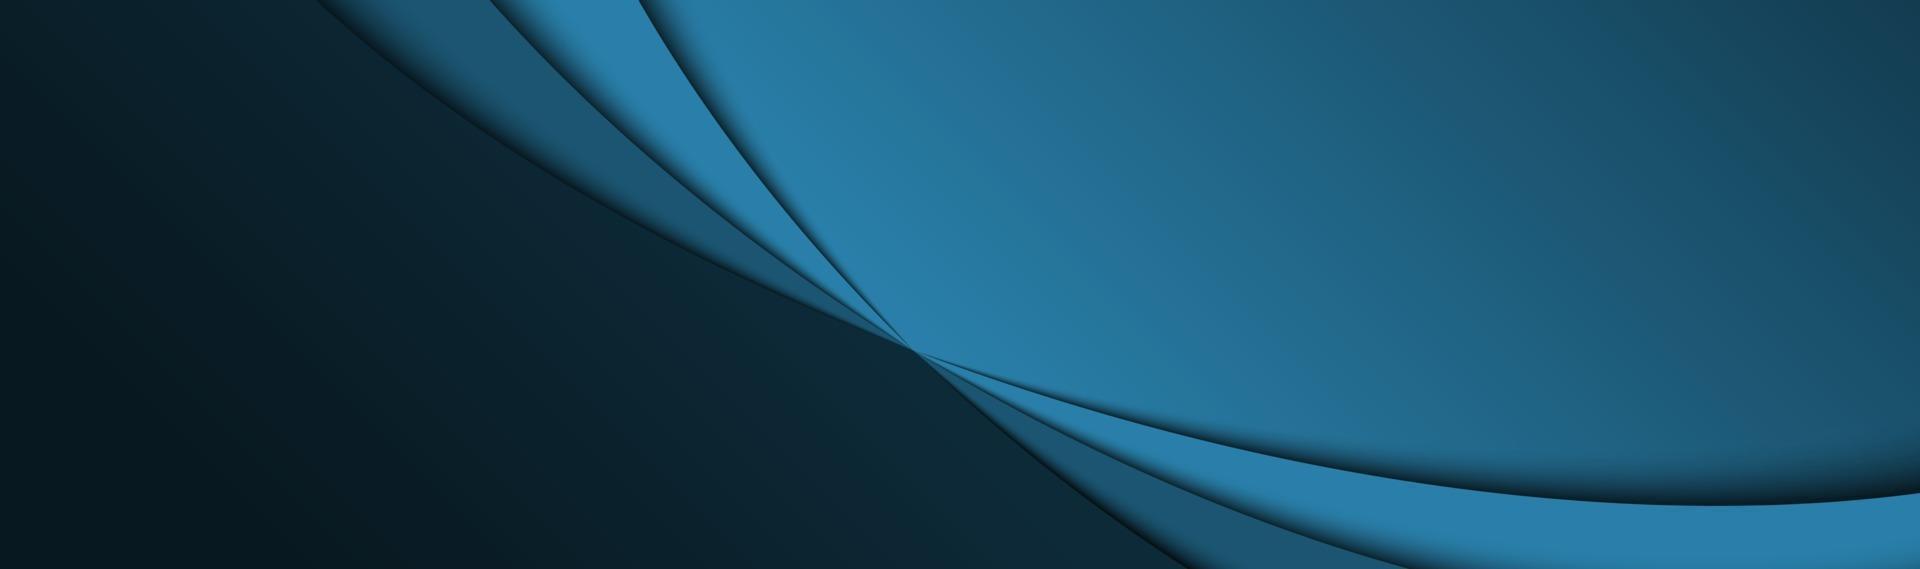 blauwe abstracte kop met donkere rondingen vectorillustratie met lege ruimte voor uw tekst zakelijke sjabloon banner vector